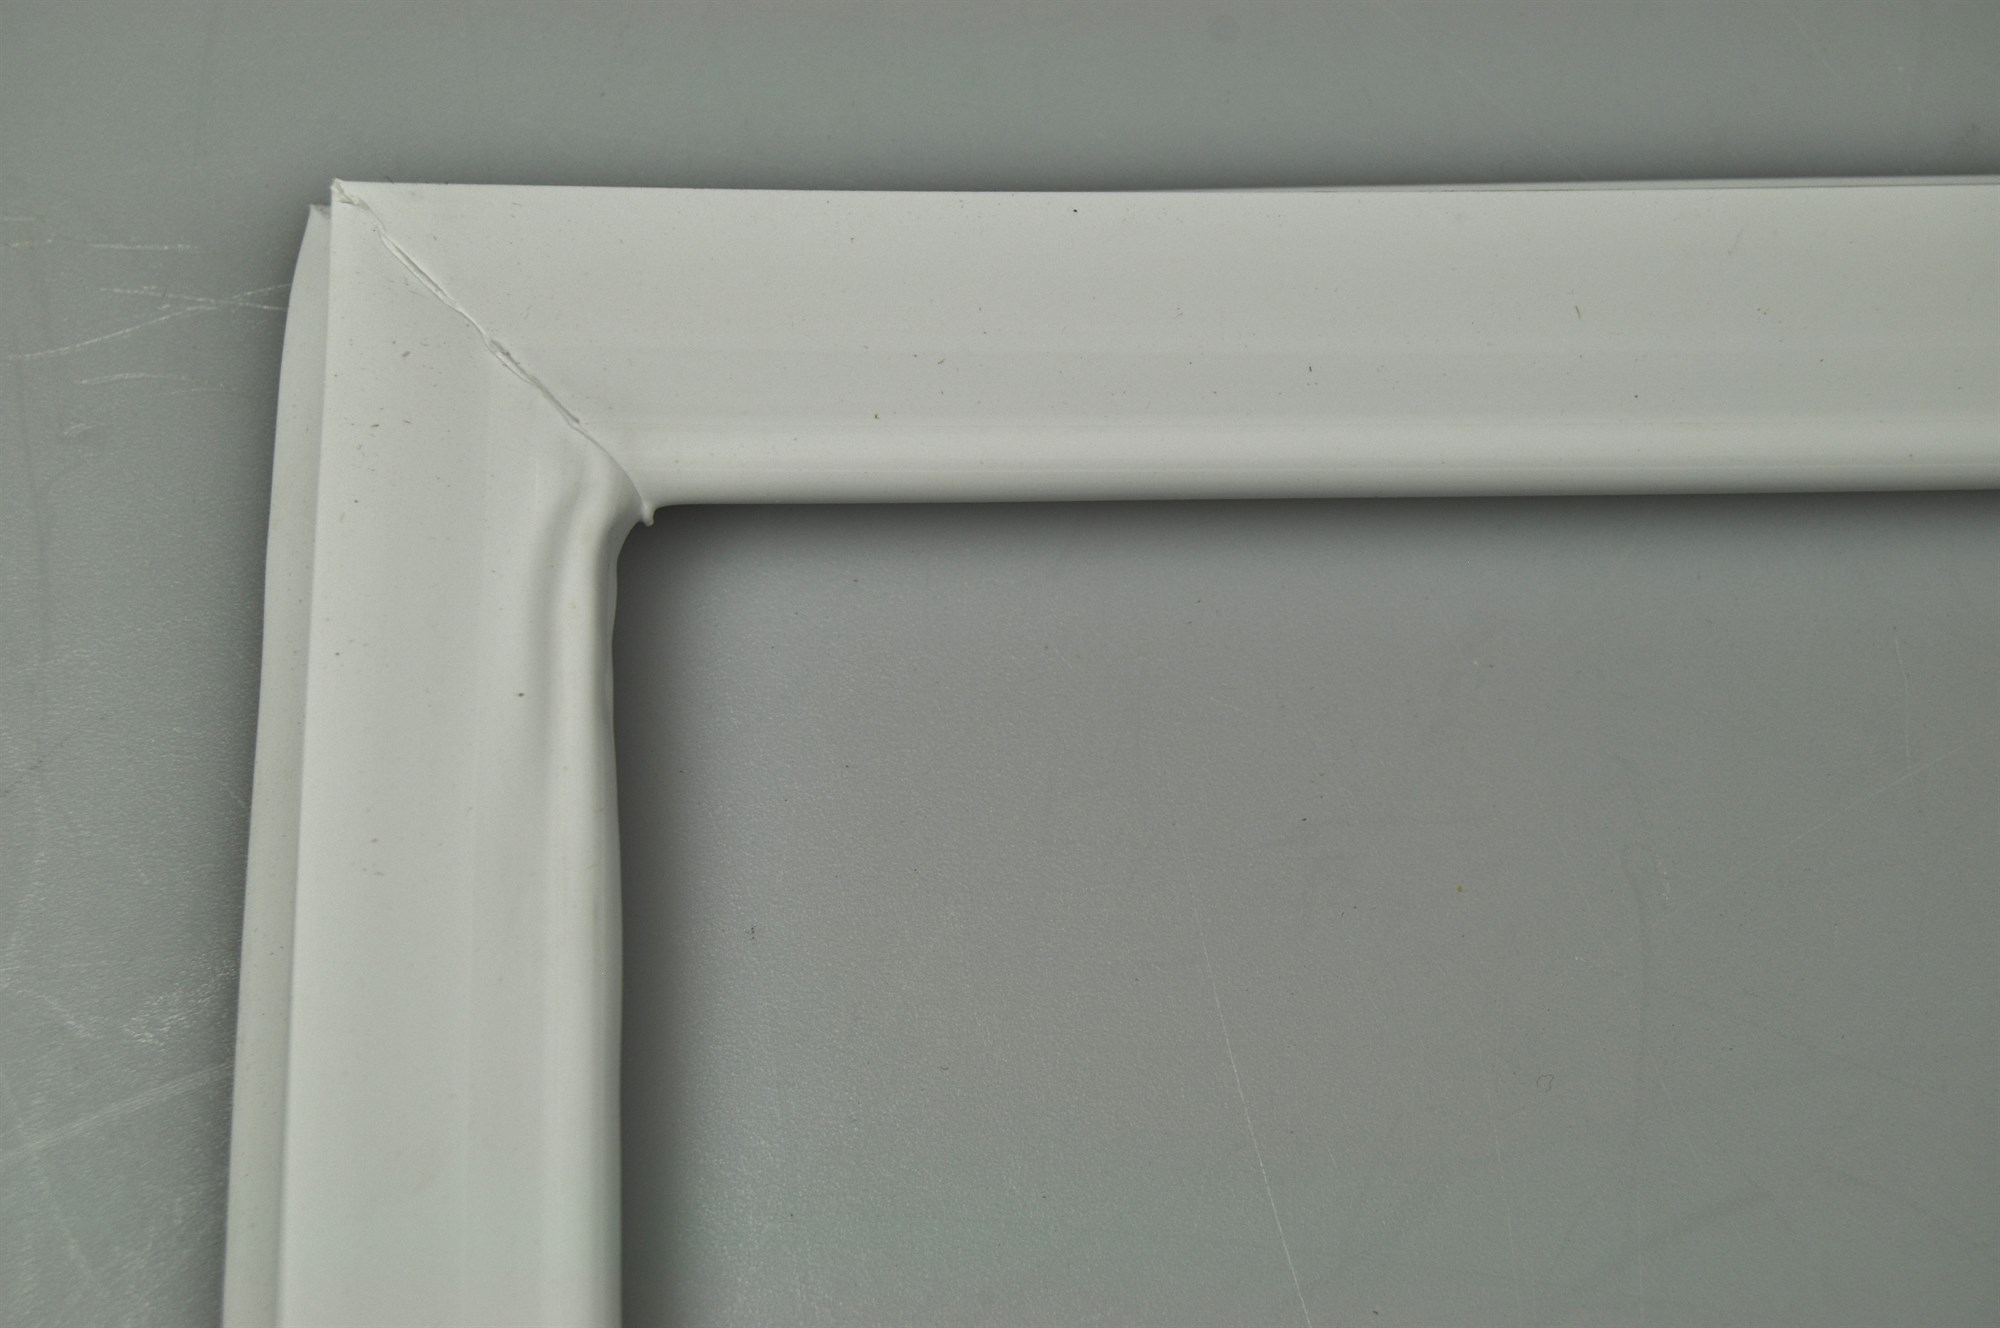 Joint de congelateur, Maytag frigo & congélateur - Blanc